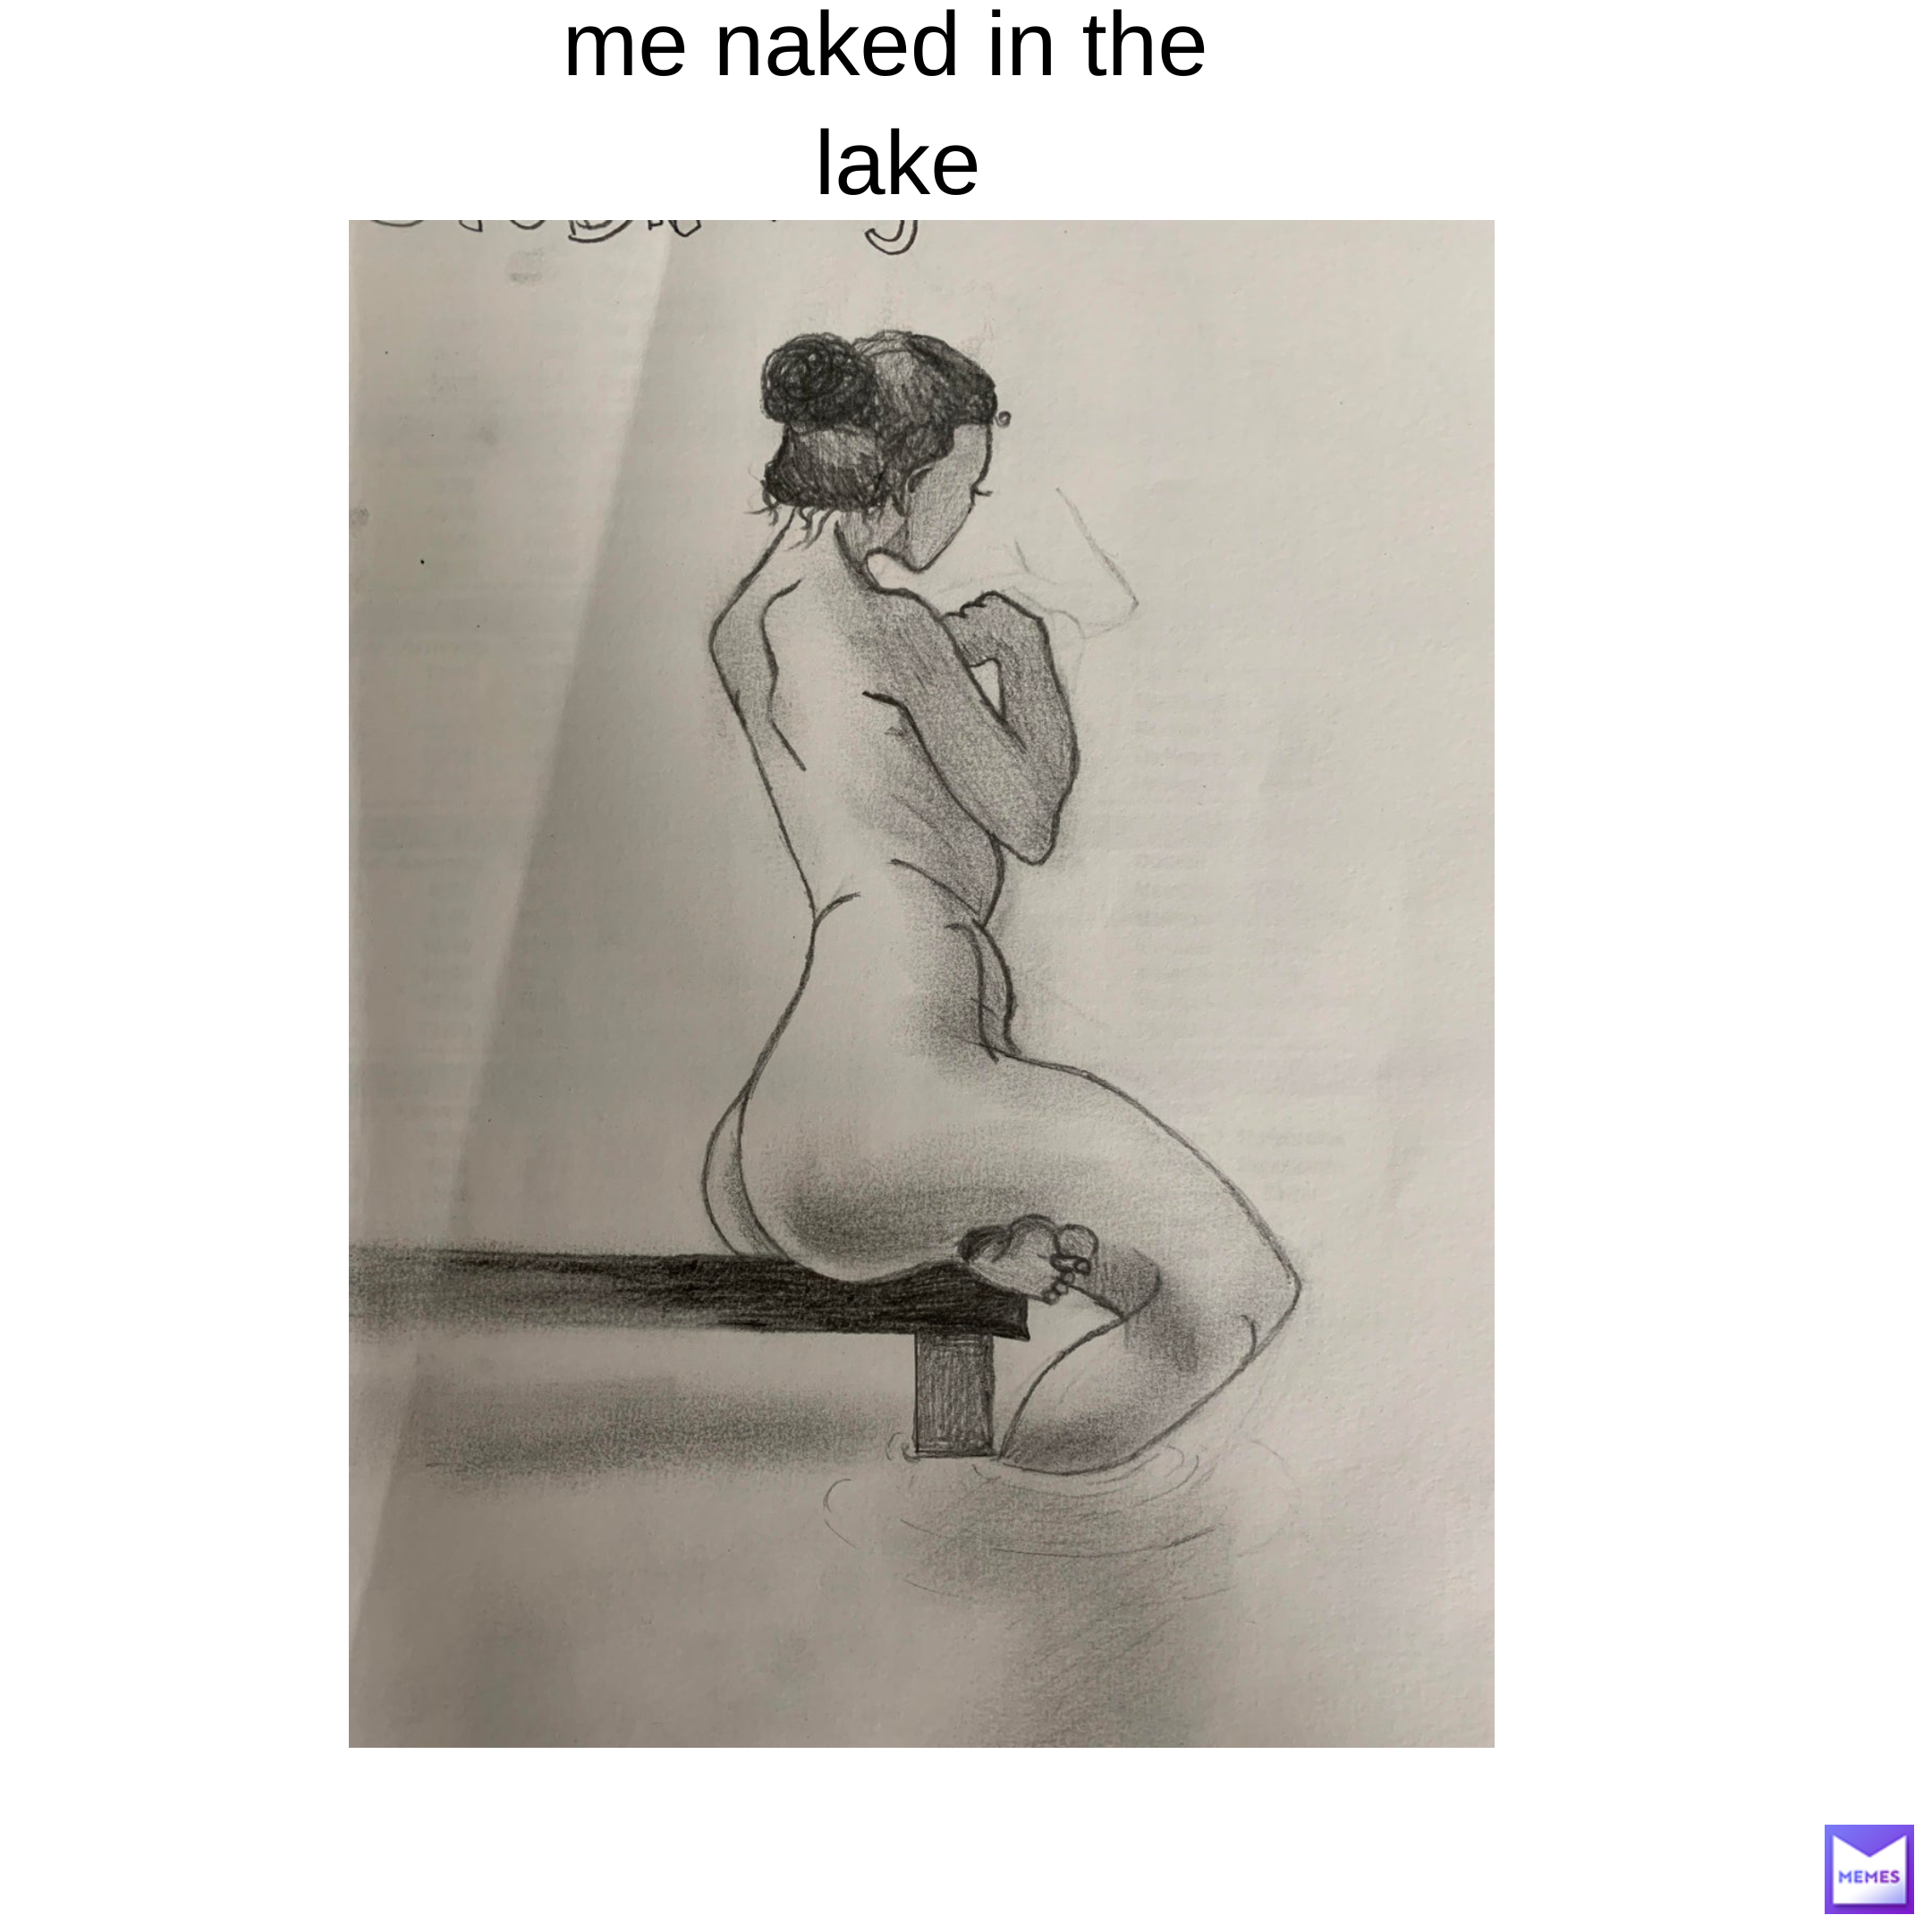 Naked memes